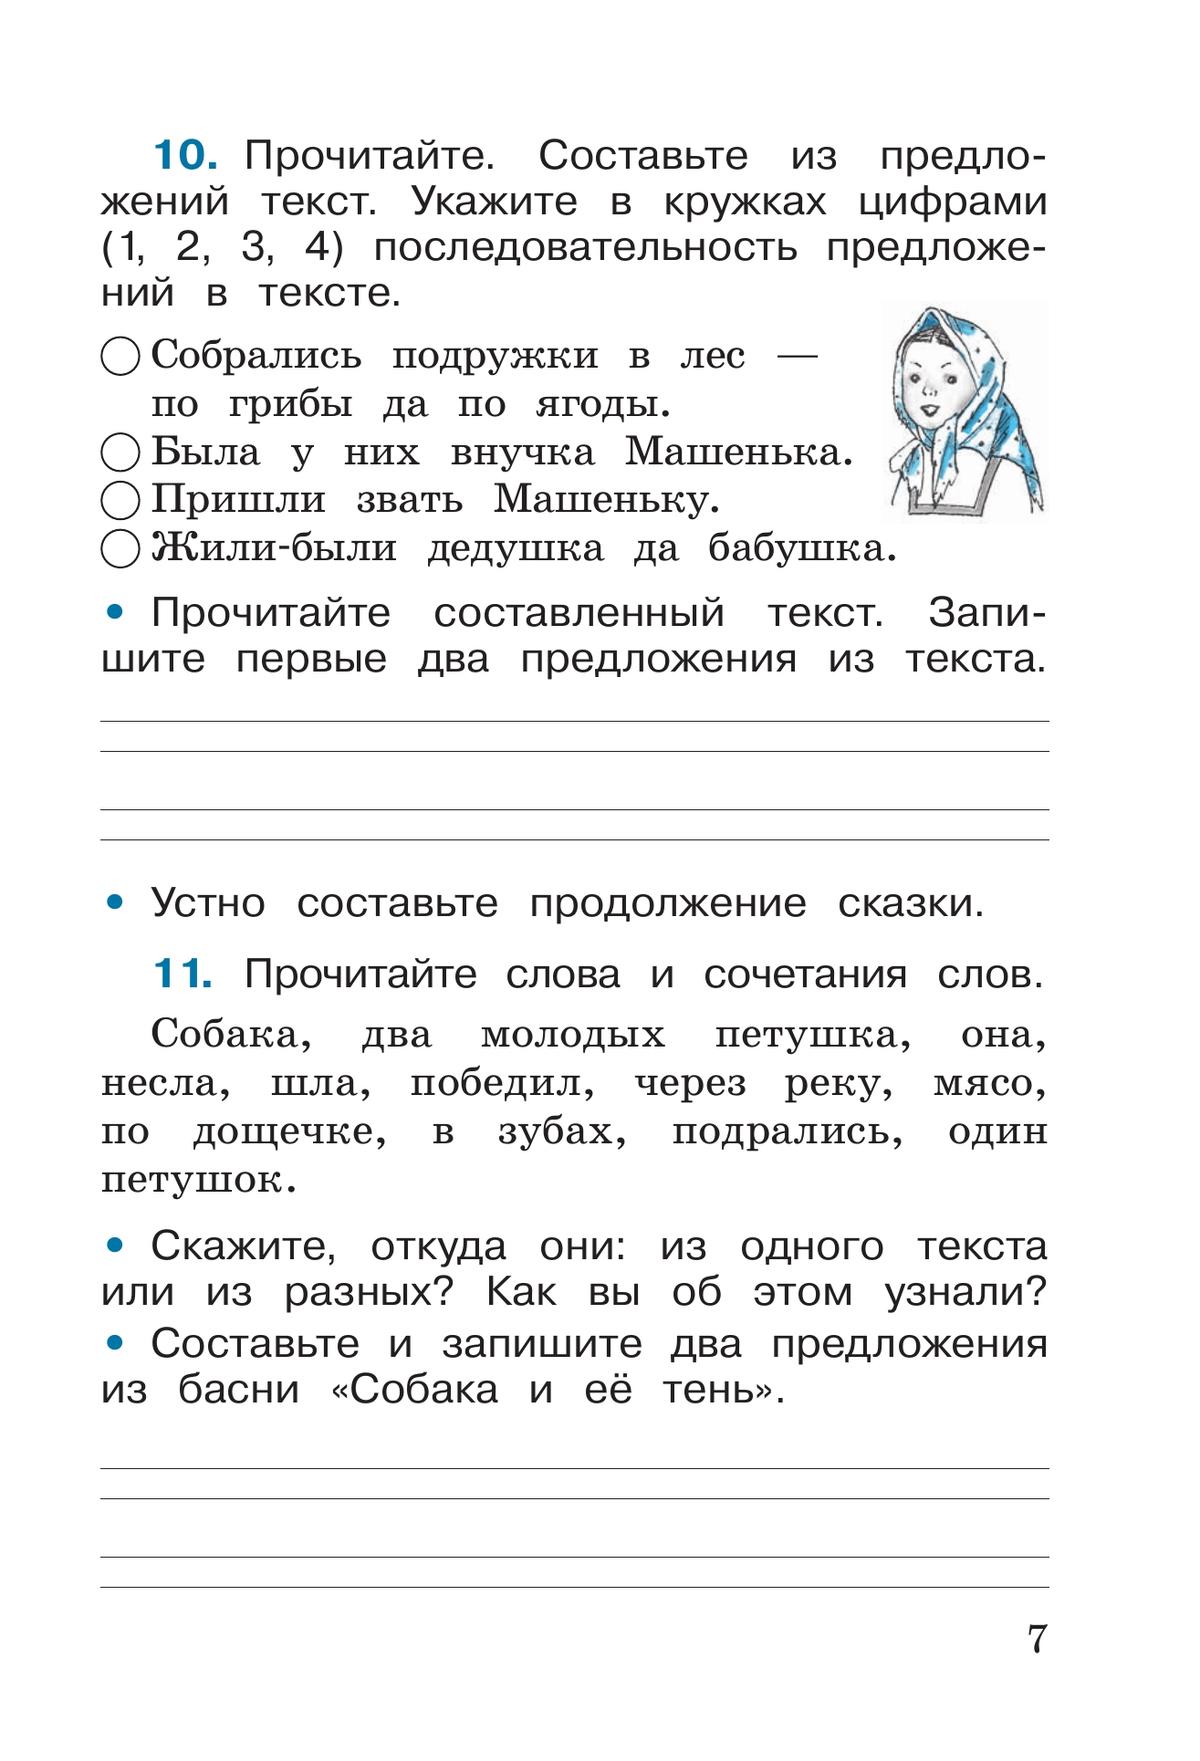 Русский язык. Рабочая тетрадь. 2 класс. В 2-х ч. Ч. 1 5